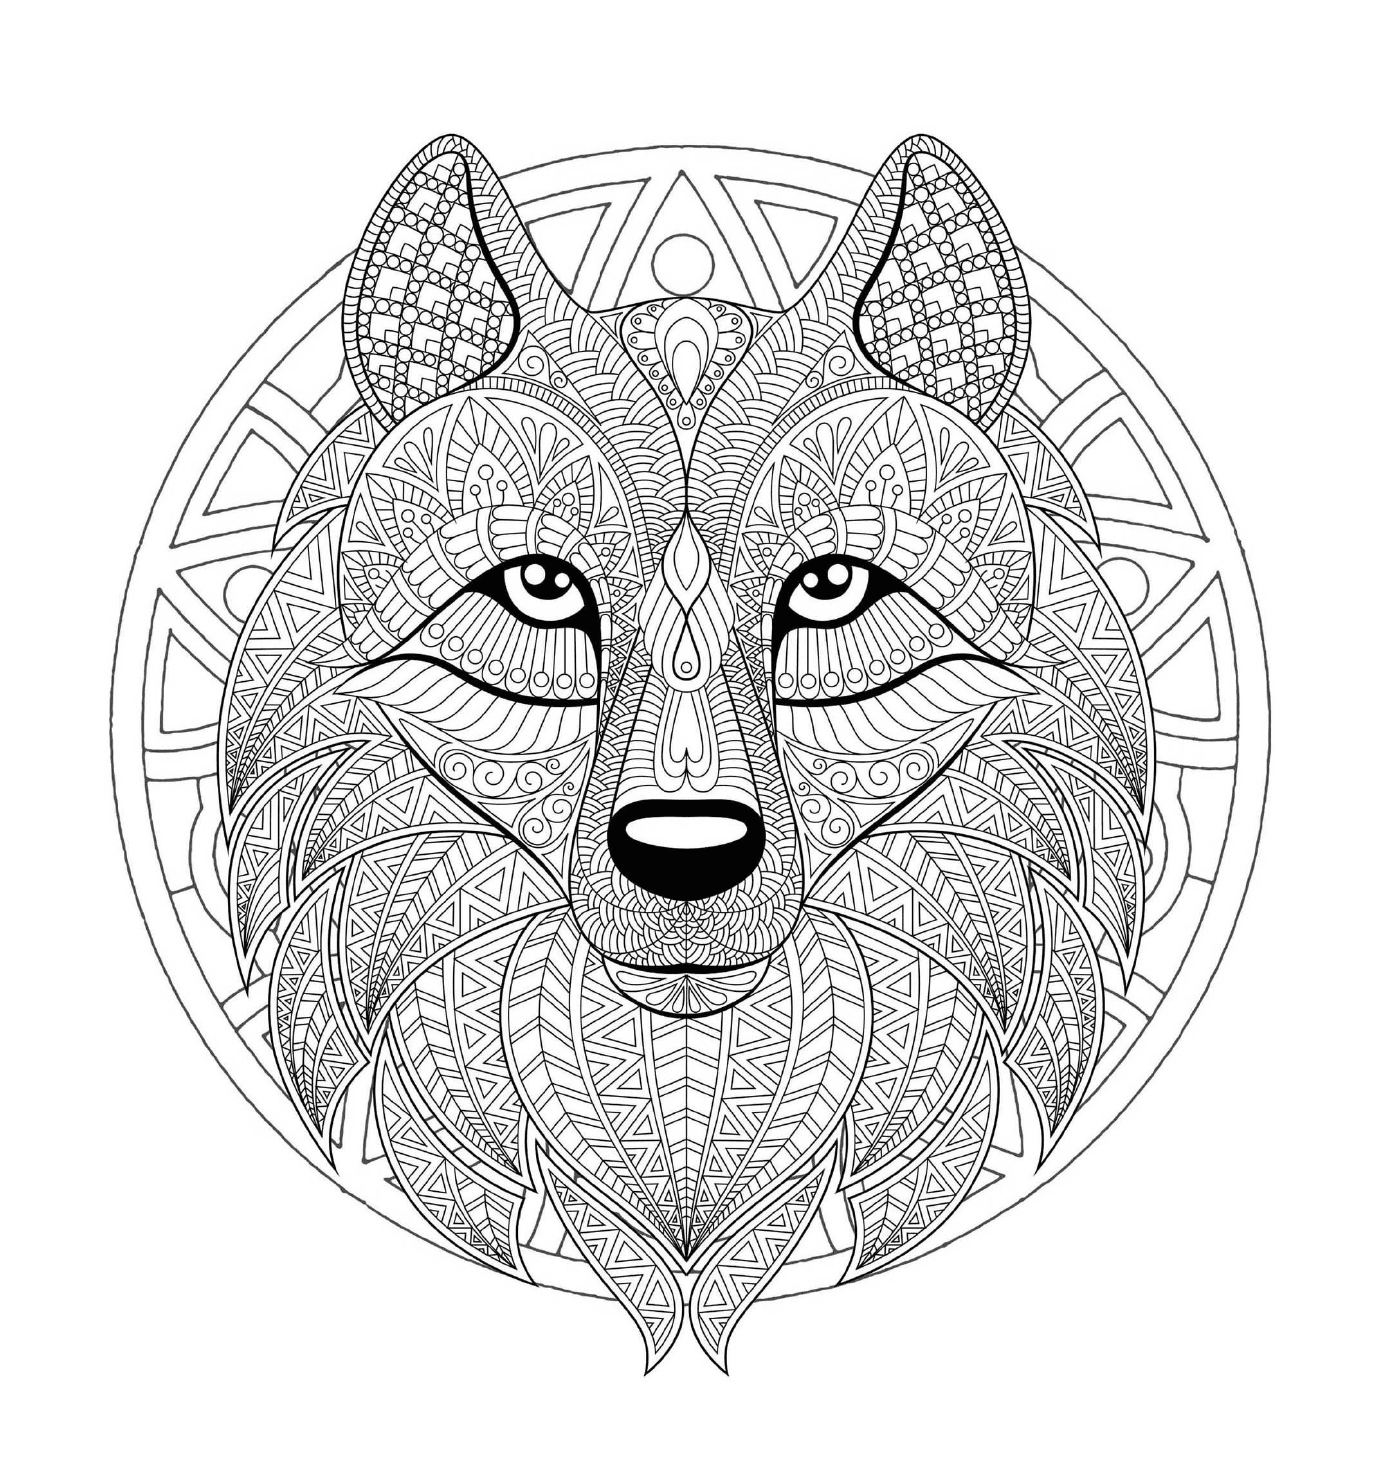  Wolfskopf in einem komplexen Mandala 